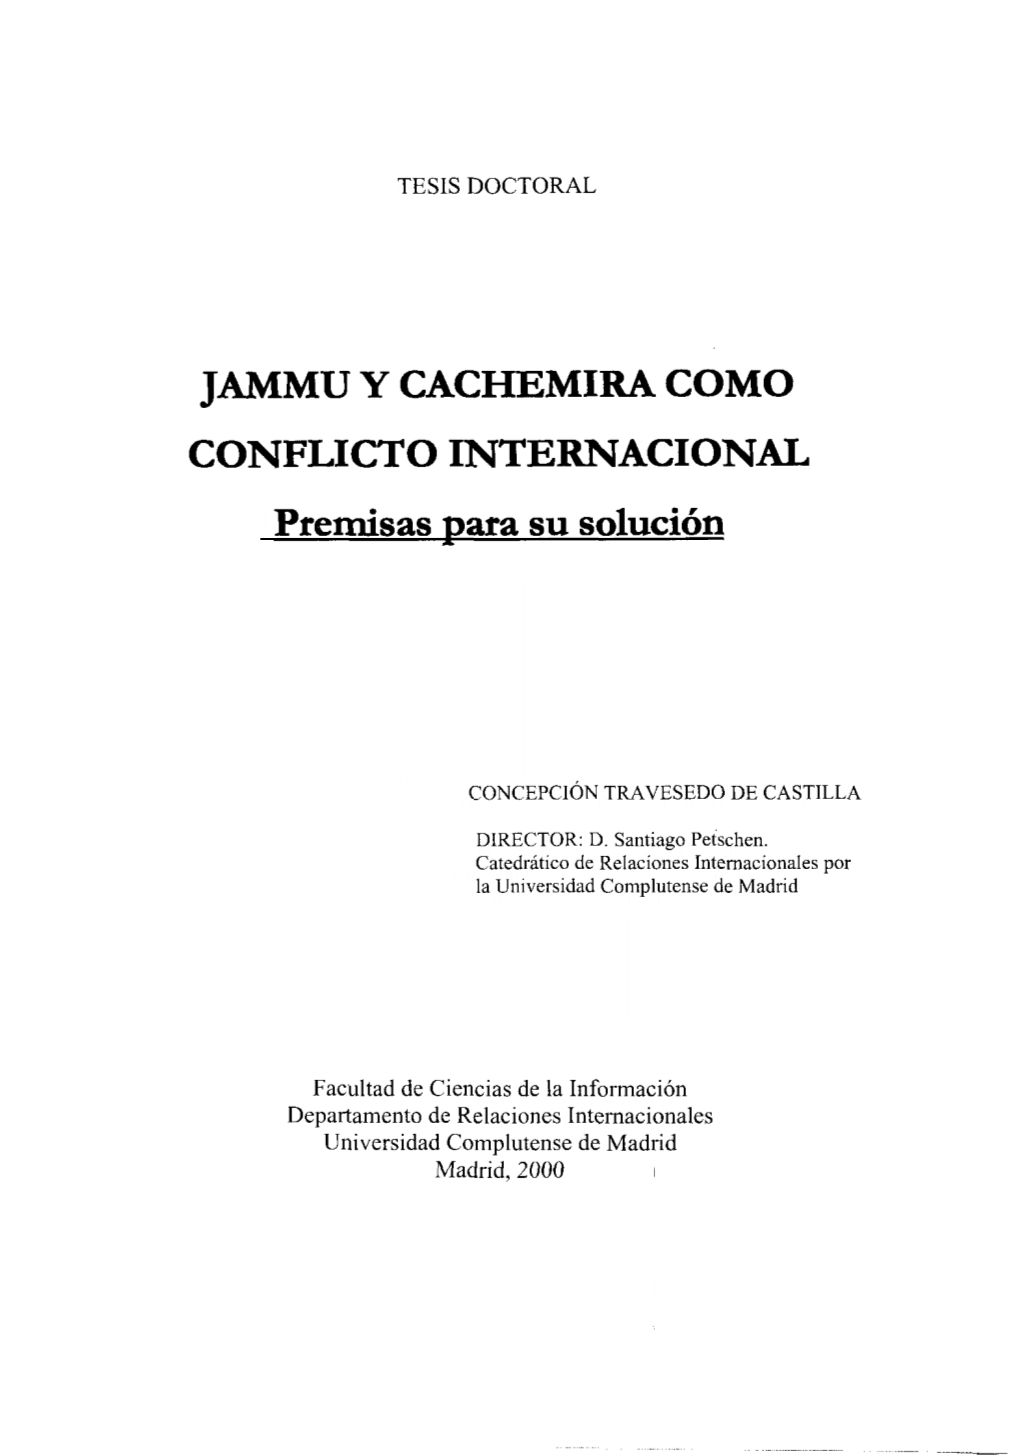 JAMMU Y CACHEMIRA COMO CONFLICTO INTERNACIONAL Premisas Para Su Solución